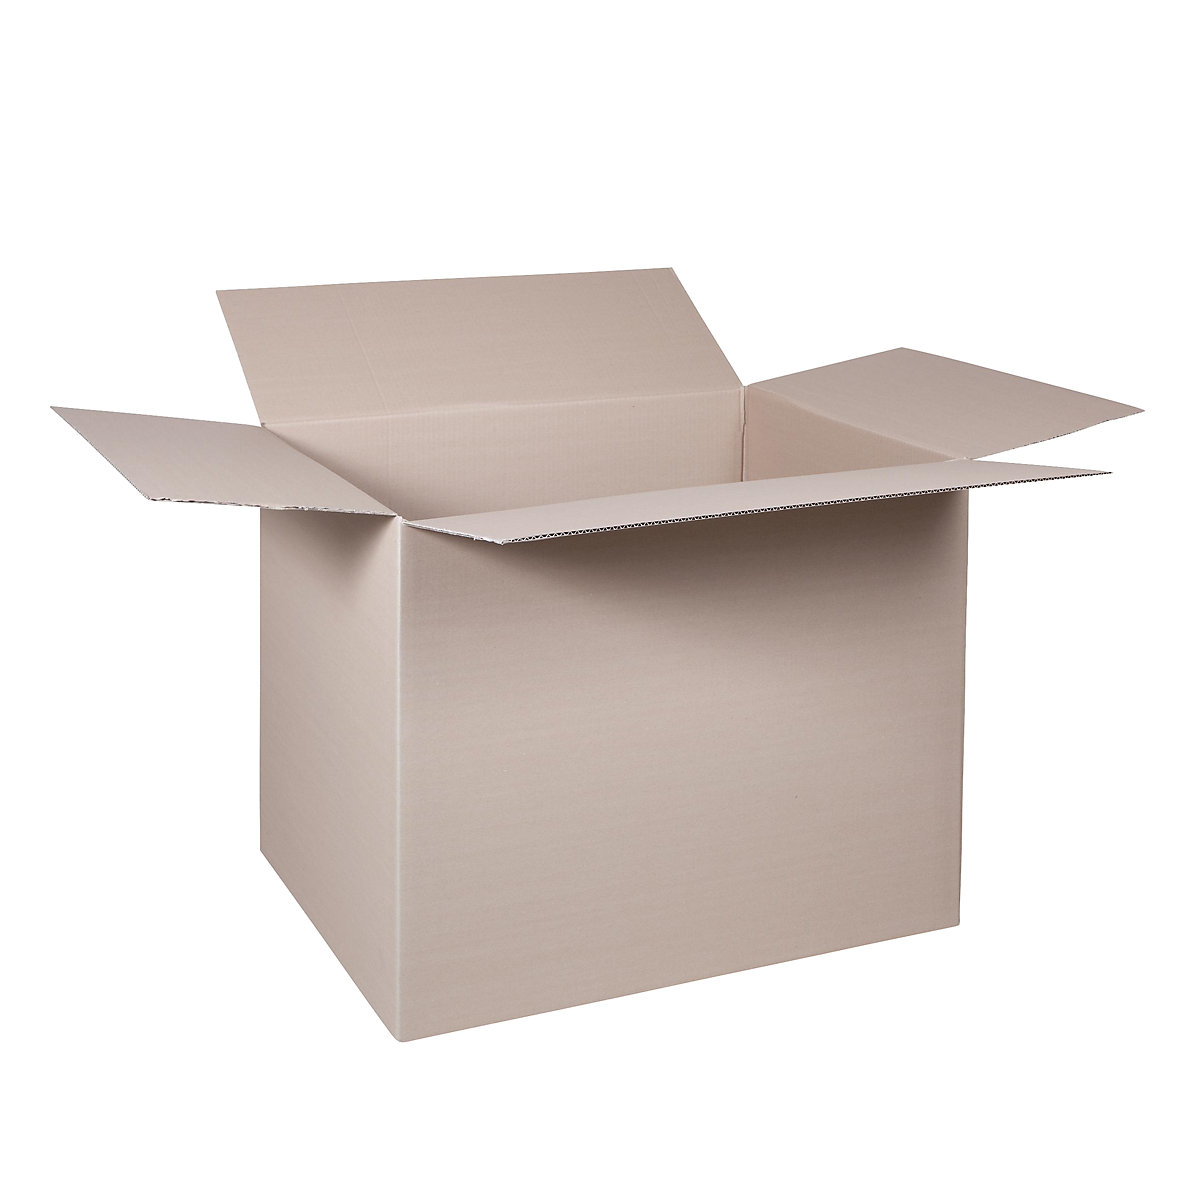 Cutie de carton pliantă, FEFCO 0201, cu 1 strat de carton ondulat, dimensiuni interioare 780 x 580 x 600 mm, amb. 100 buc.-38